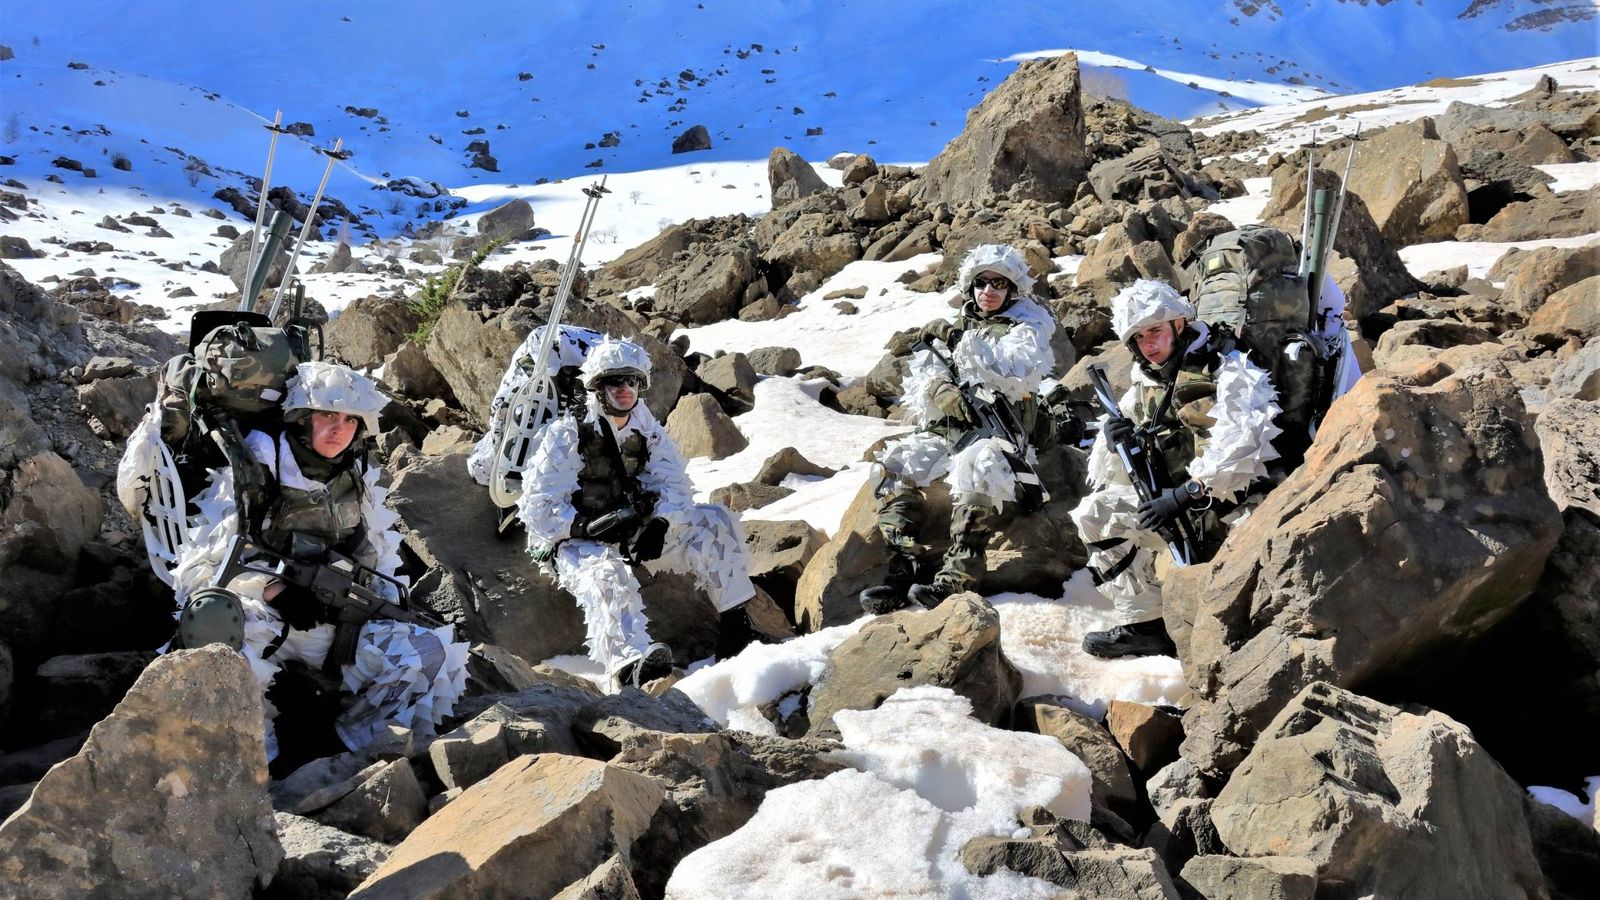 Cazadores de Montaña con camuflaje invernal durante una pausa. (Juanjo Fernández)